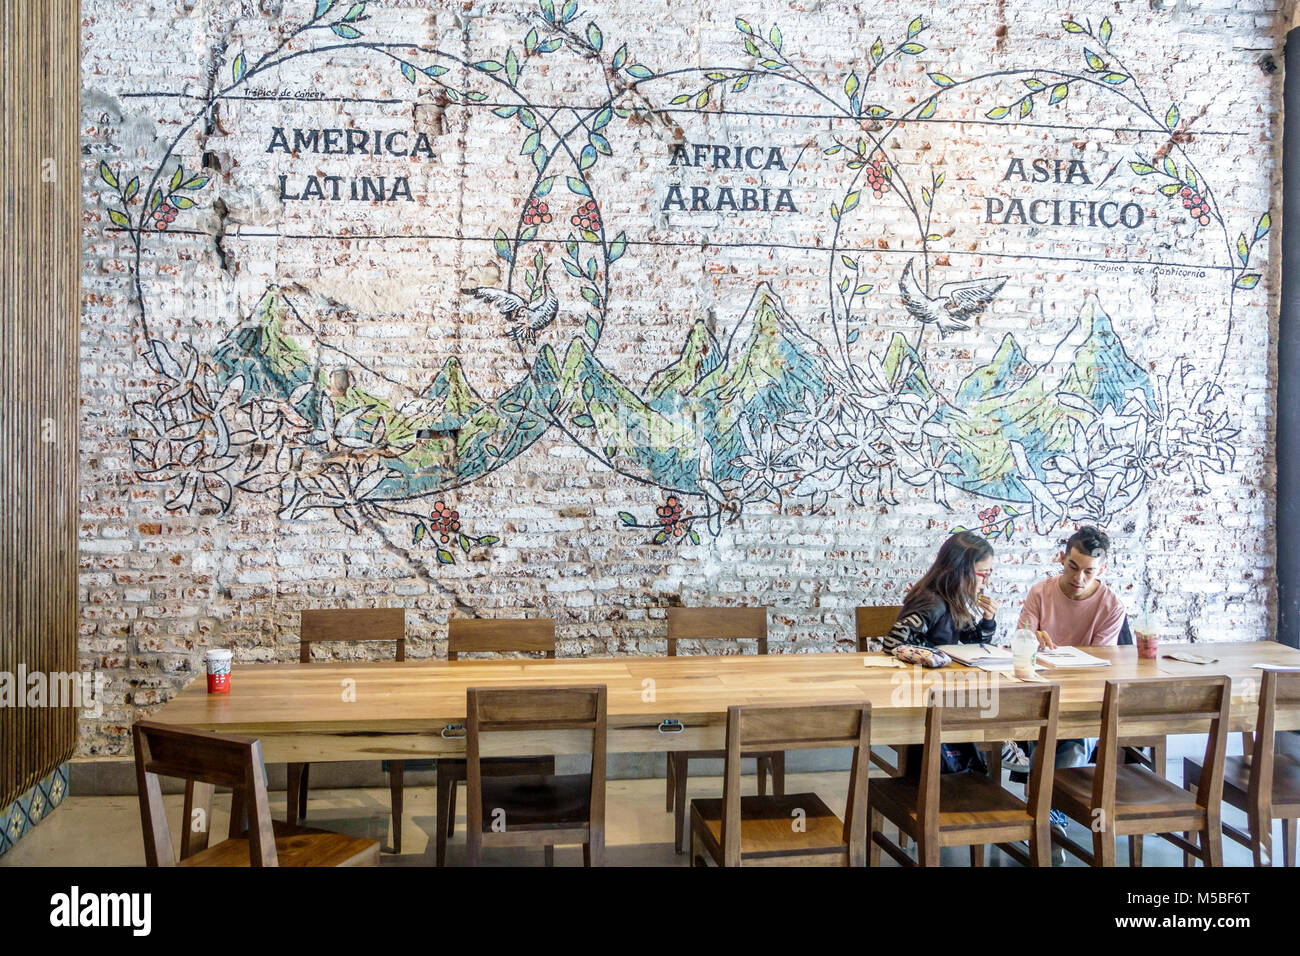 Buenos Aires Argentinien, Galerien Pacifico, Einkaufszentrum, innen, Starbucks Kaffee, Café, Kaffeehaus, Wandgemälde, freiliegender Ziegelstein, Tisch, Mann Männer männlich, w Stockfoto